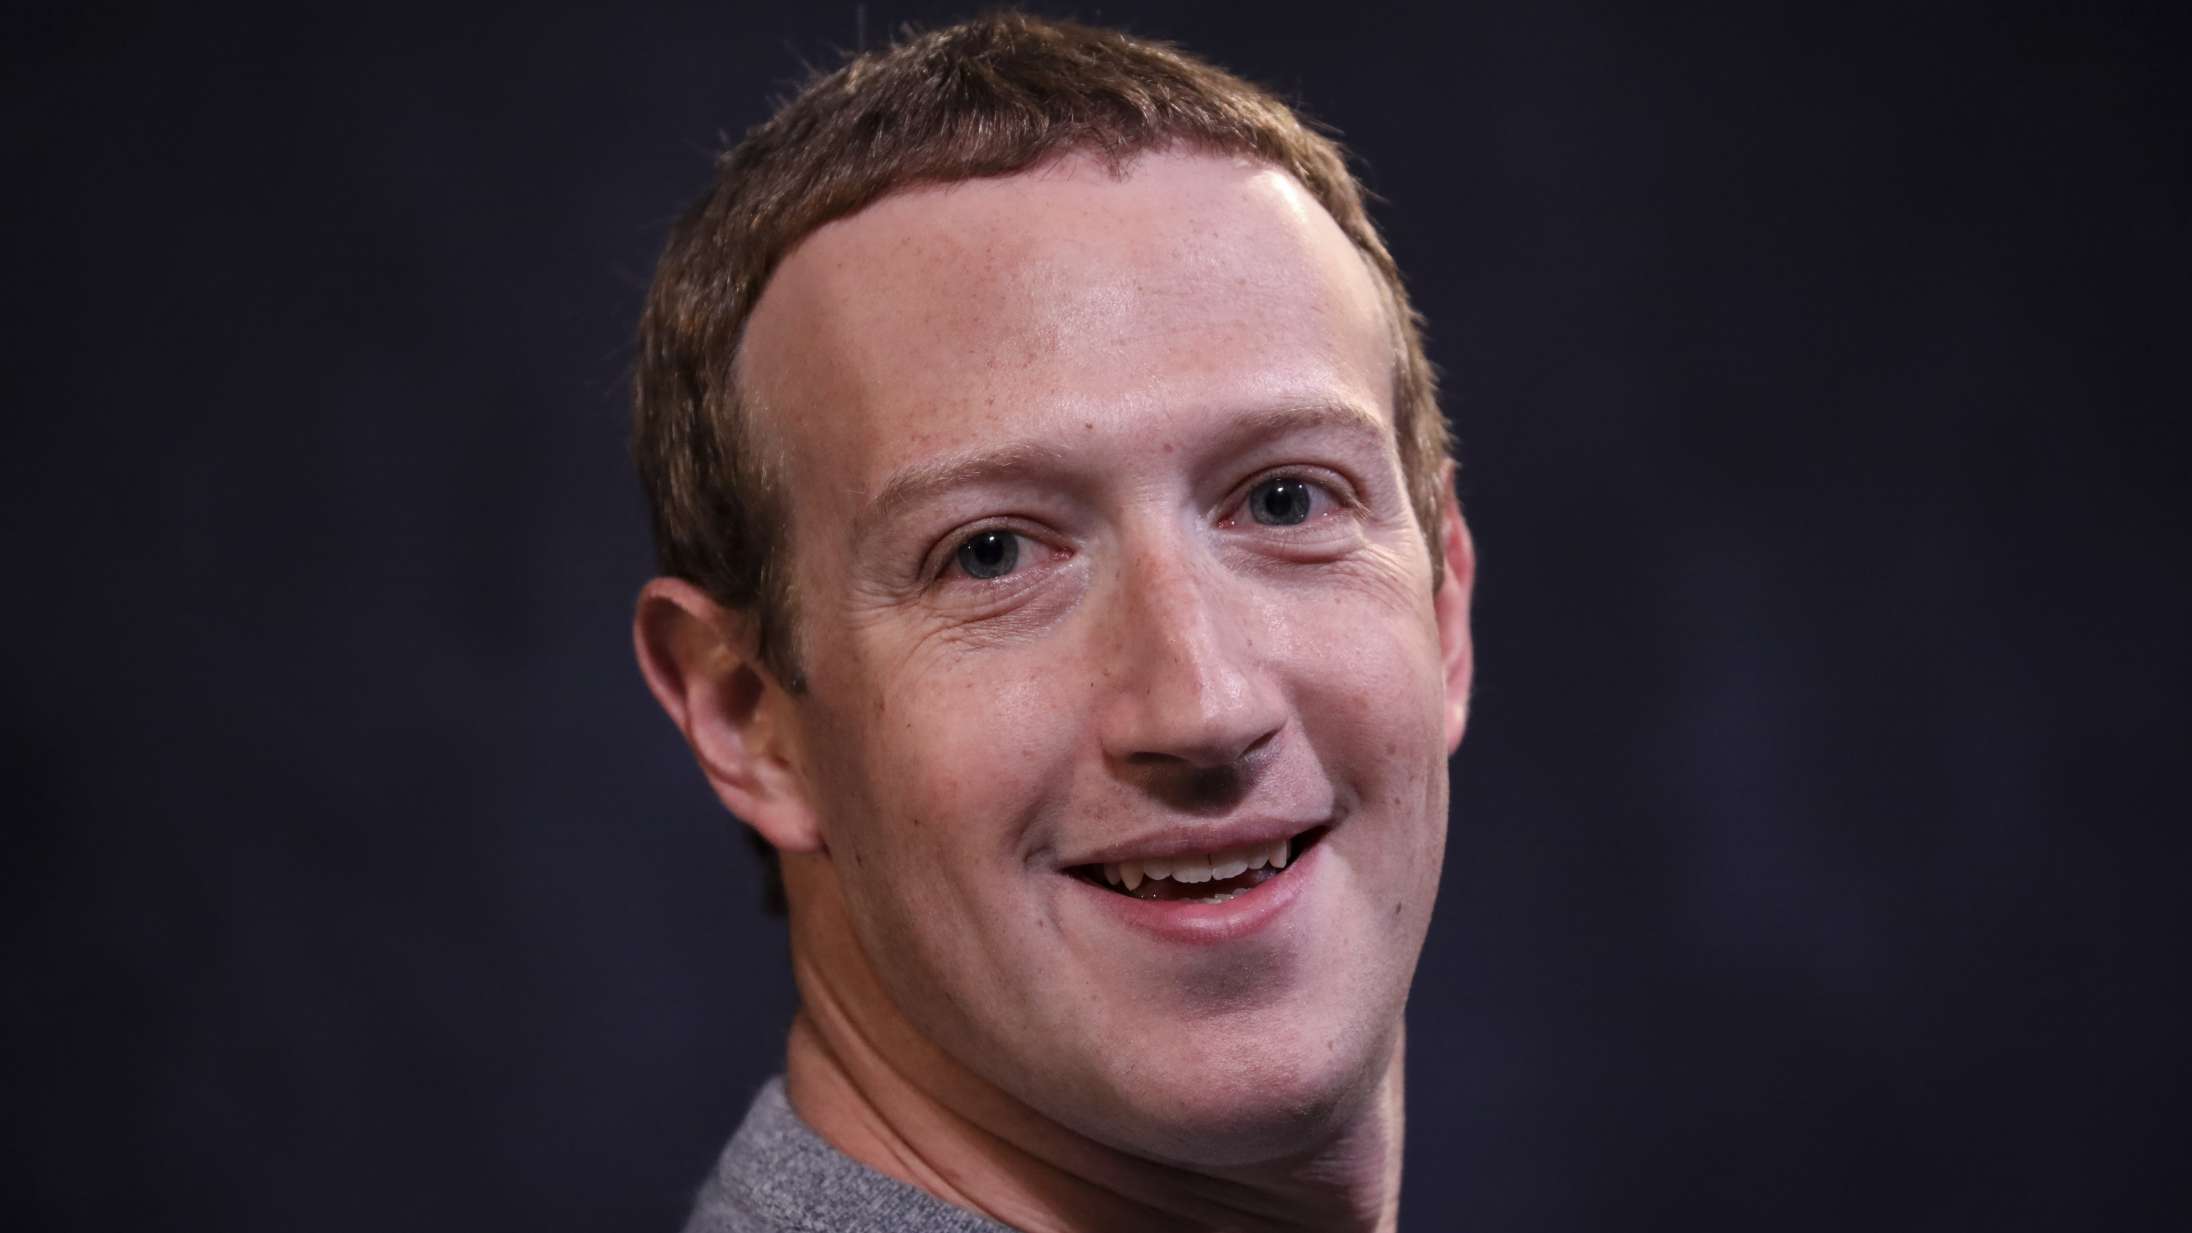 Mark Zuckerberg har muligvis lige taget årets værste selfie